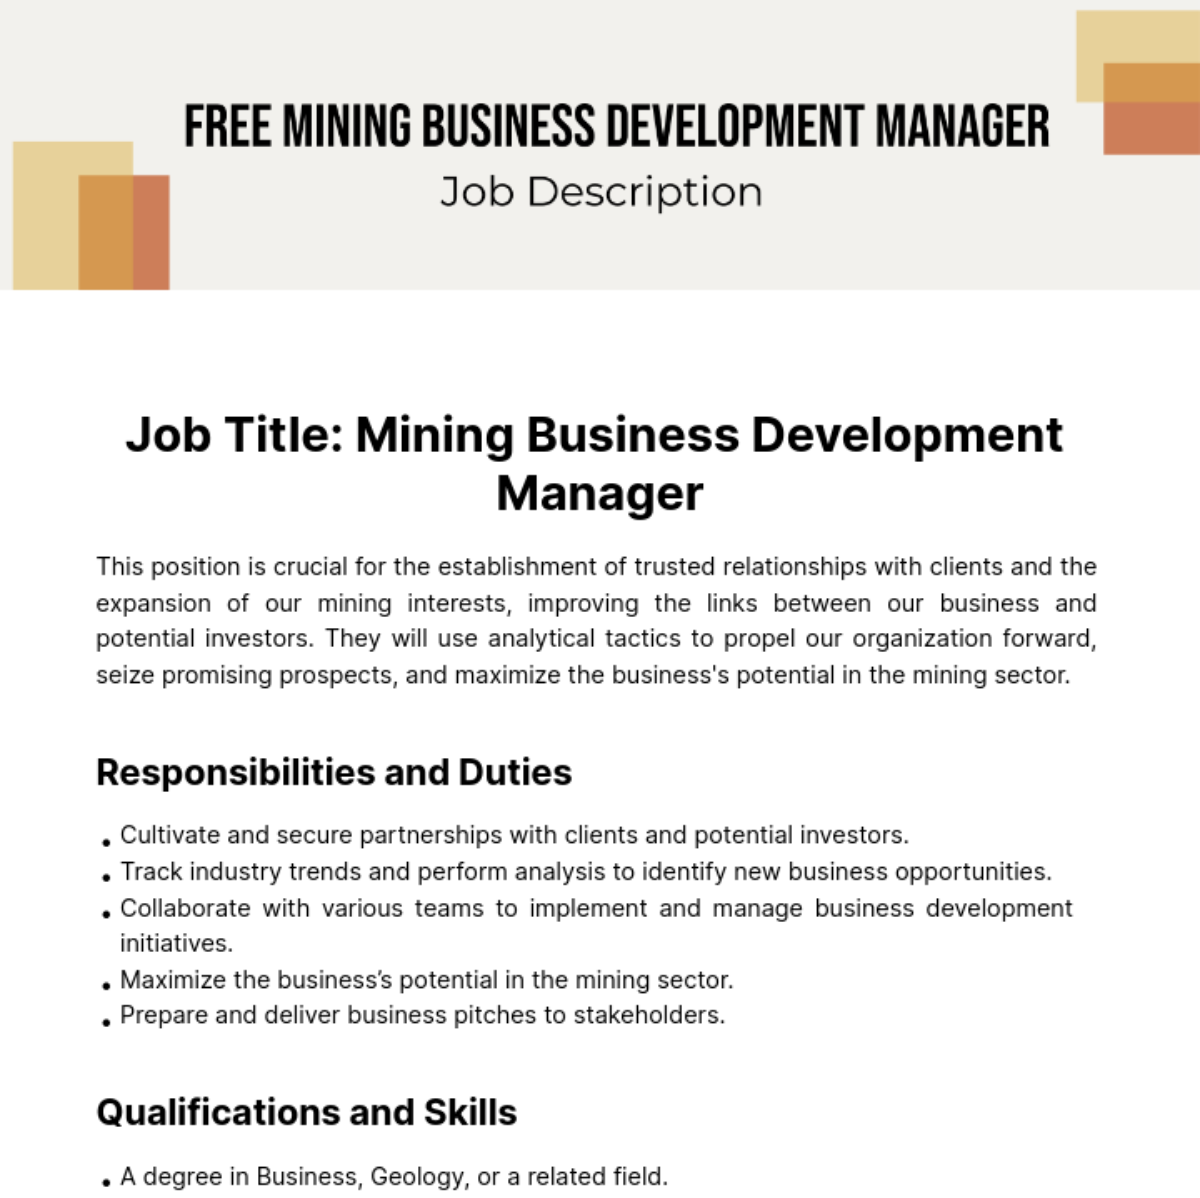 Mining Business Development Manager Job Description Template